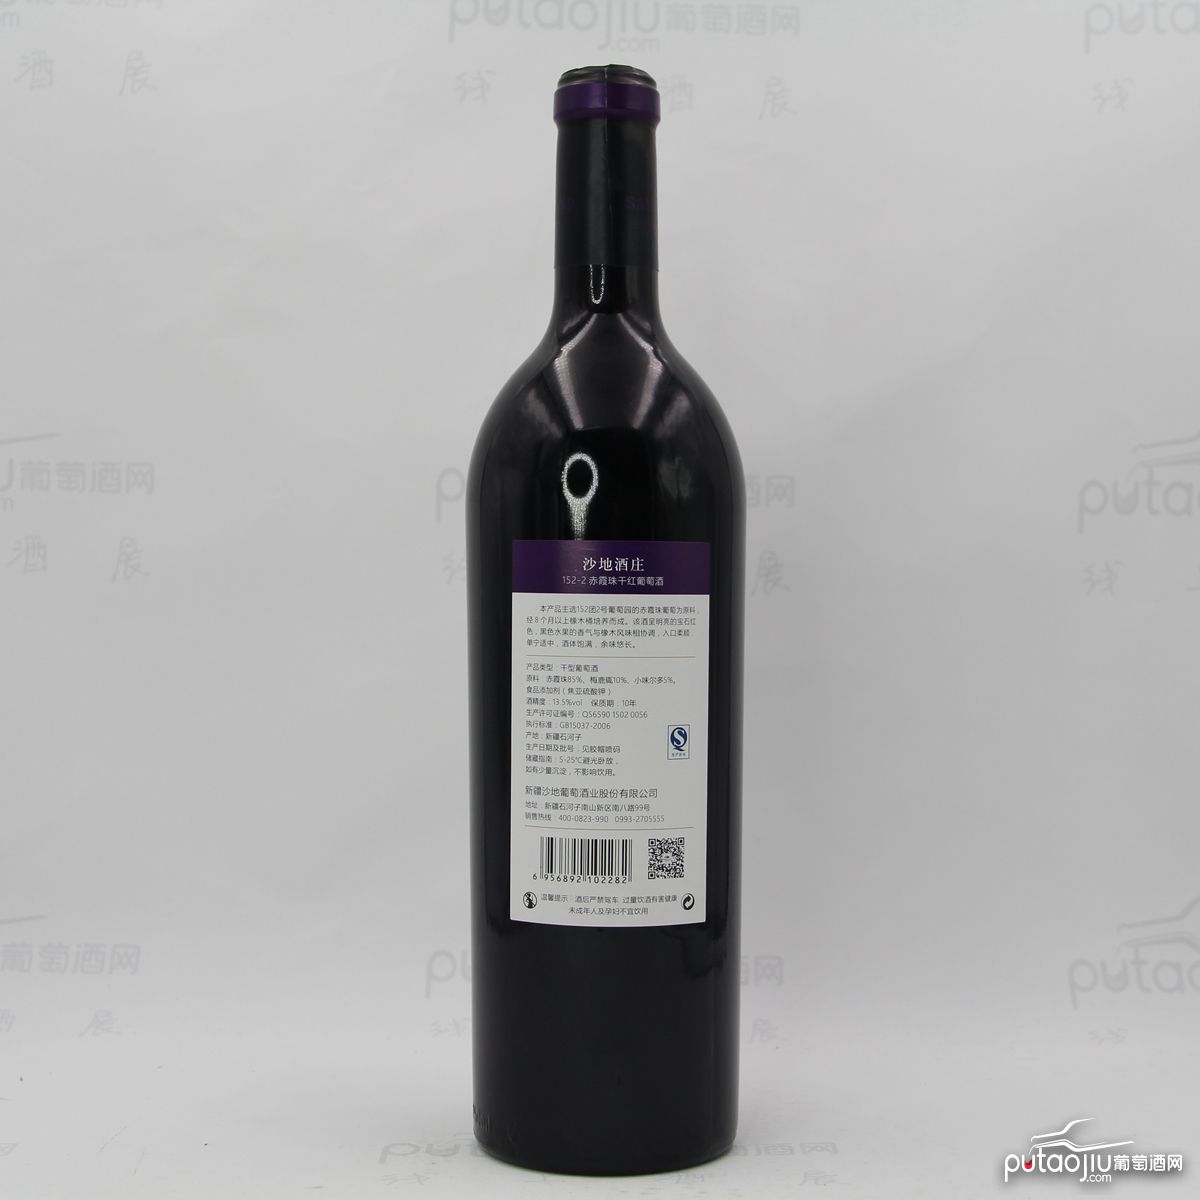 中国新疆产区沙地酒庄 赤霞珠152-2窖藏干红葡萄酒